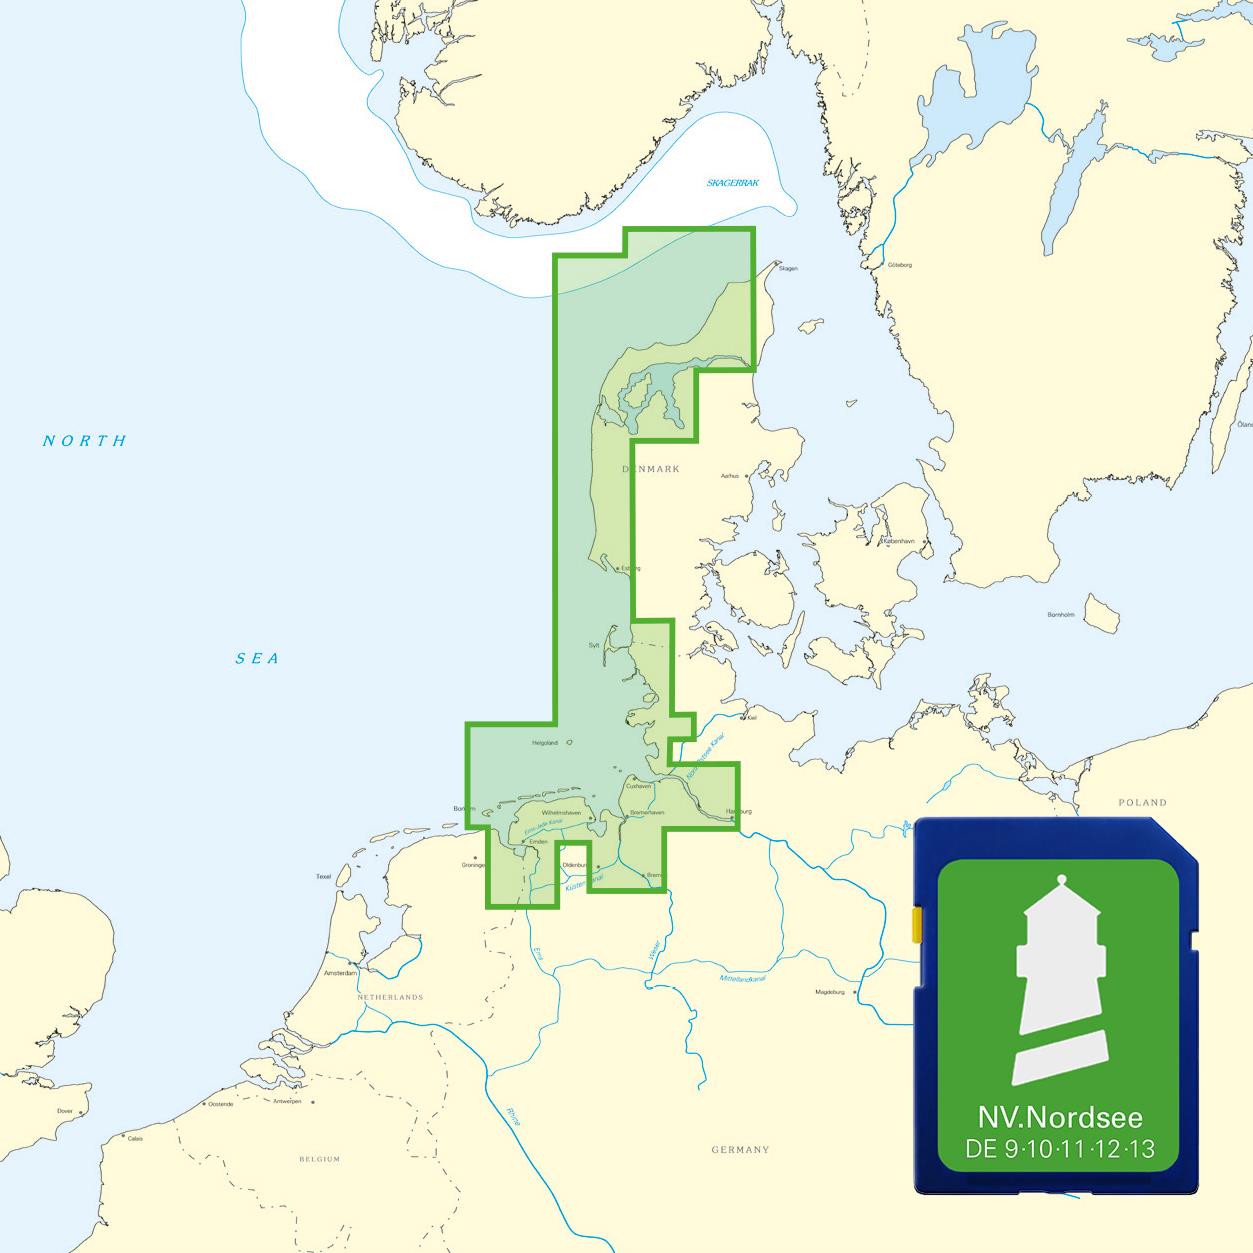 NV Nordsee Plotterseekarten